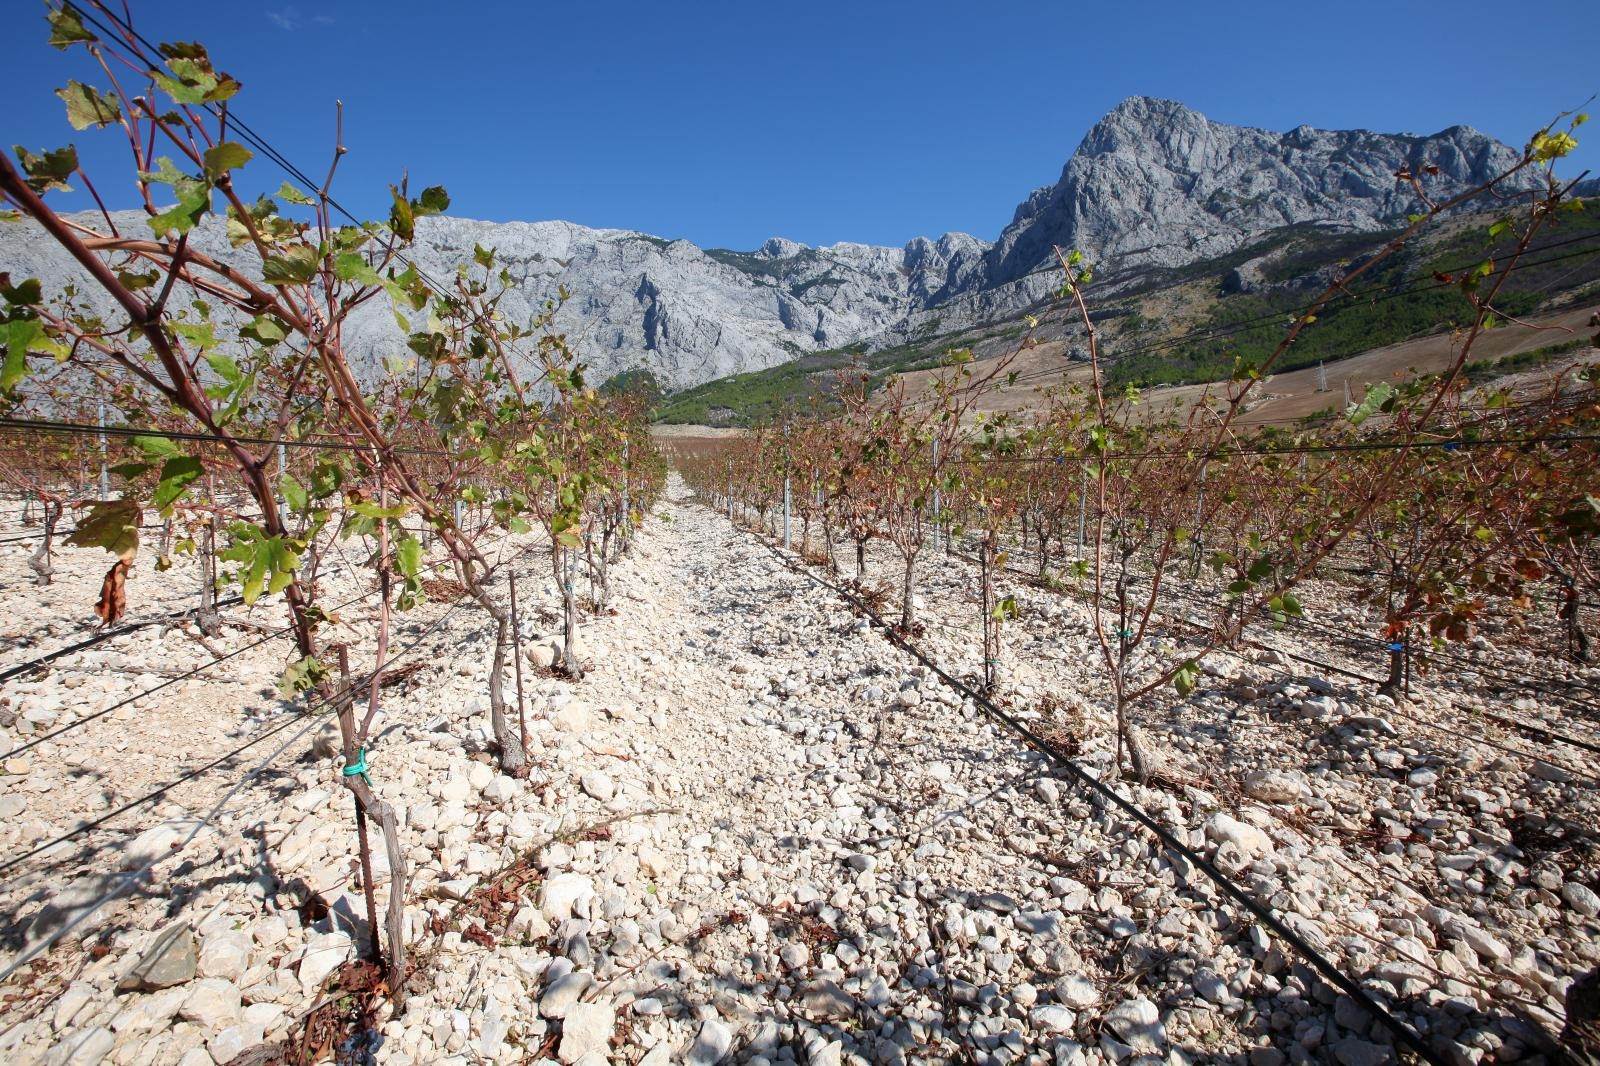 Na podrucju Makarske, točnije na padinama Baskog Polja Zlatan Plenkovic je na 75 hektara posadio vinovu lozu. Uz najzastupljeniji plavac mali, posađenje i velik broj loza crljenka